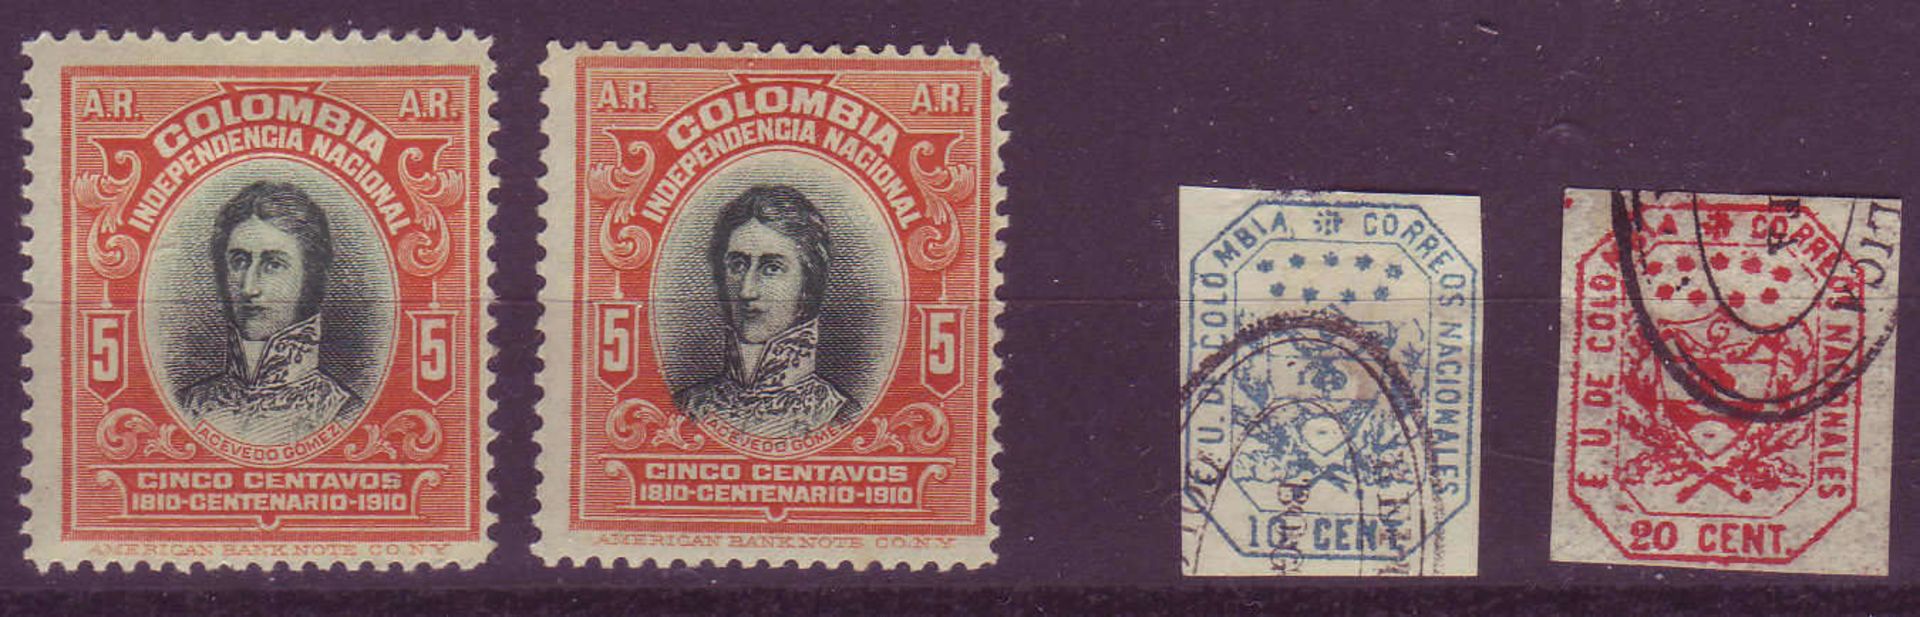 Kolumbien 1863 / 1910, Mi. - Nr. 19, 20 und 2 x 236. Wappen - Freimarken und Rückschein - Marke. *